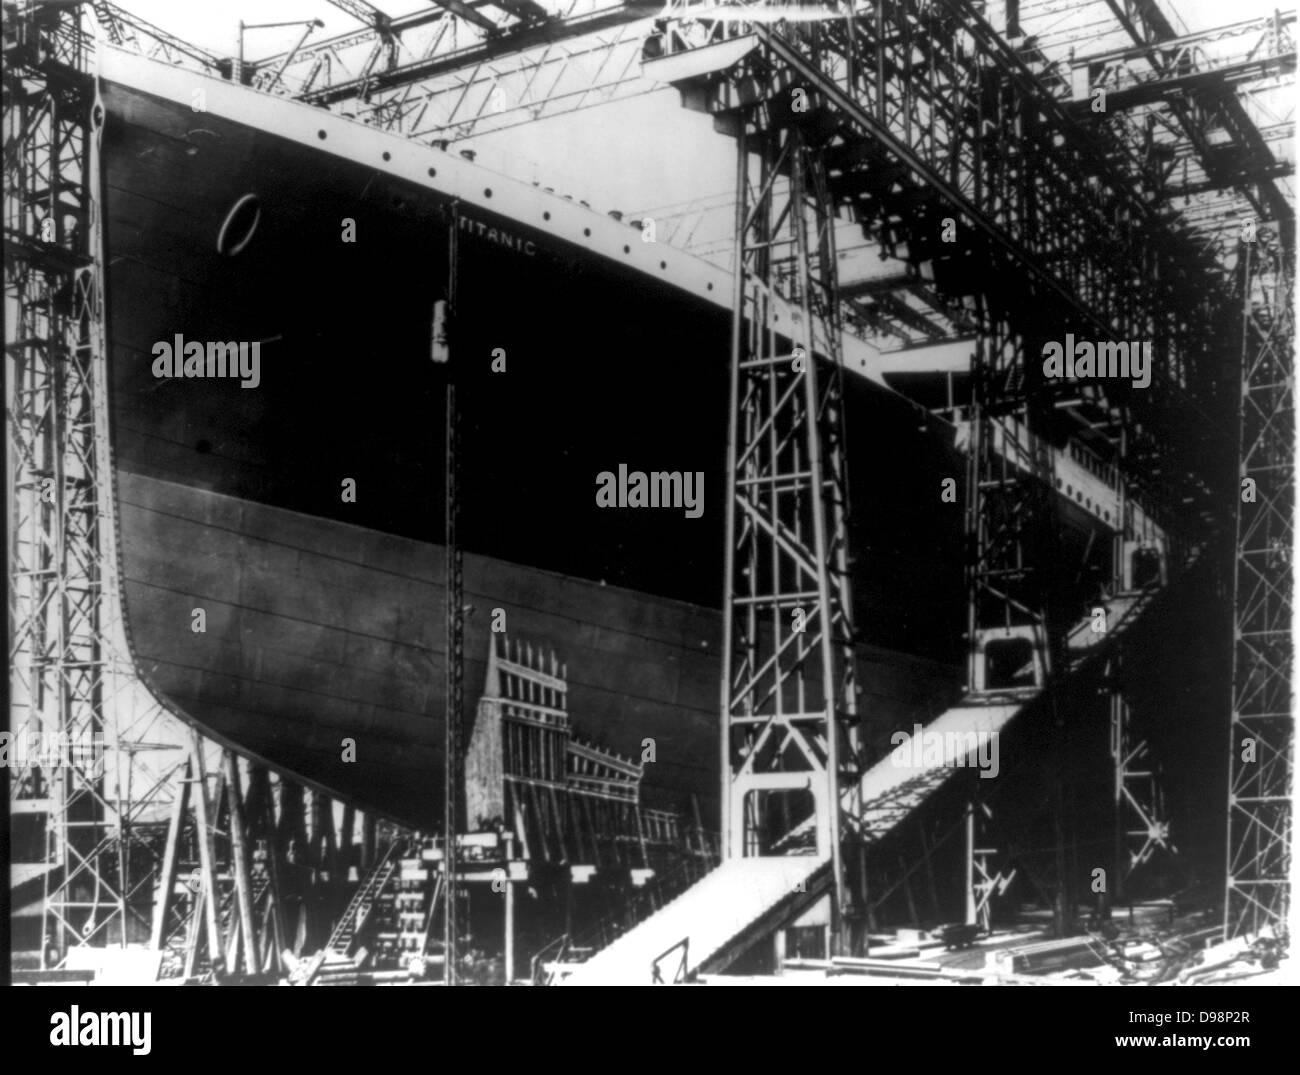 Le Titanic, paquebot de la White Star, sur les stocks dans ce chantier Harland & Wolff de Belfast, Irlande du Nord. Elle a coulé le 12 avril 1912 après avoir heurté un iceberg pour son premier voyage à New York . Plus de 1 500 vies perdues. Naufrage catastrophe Banque D'Images